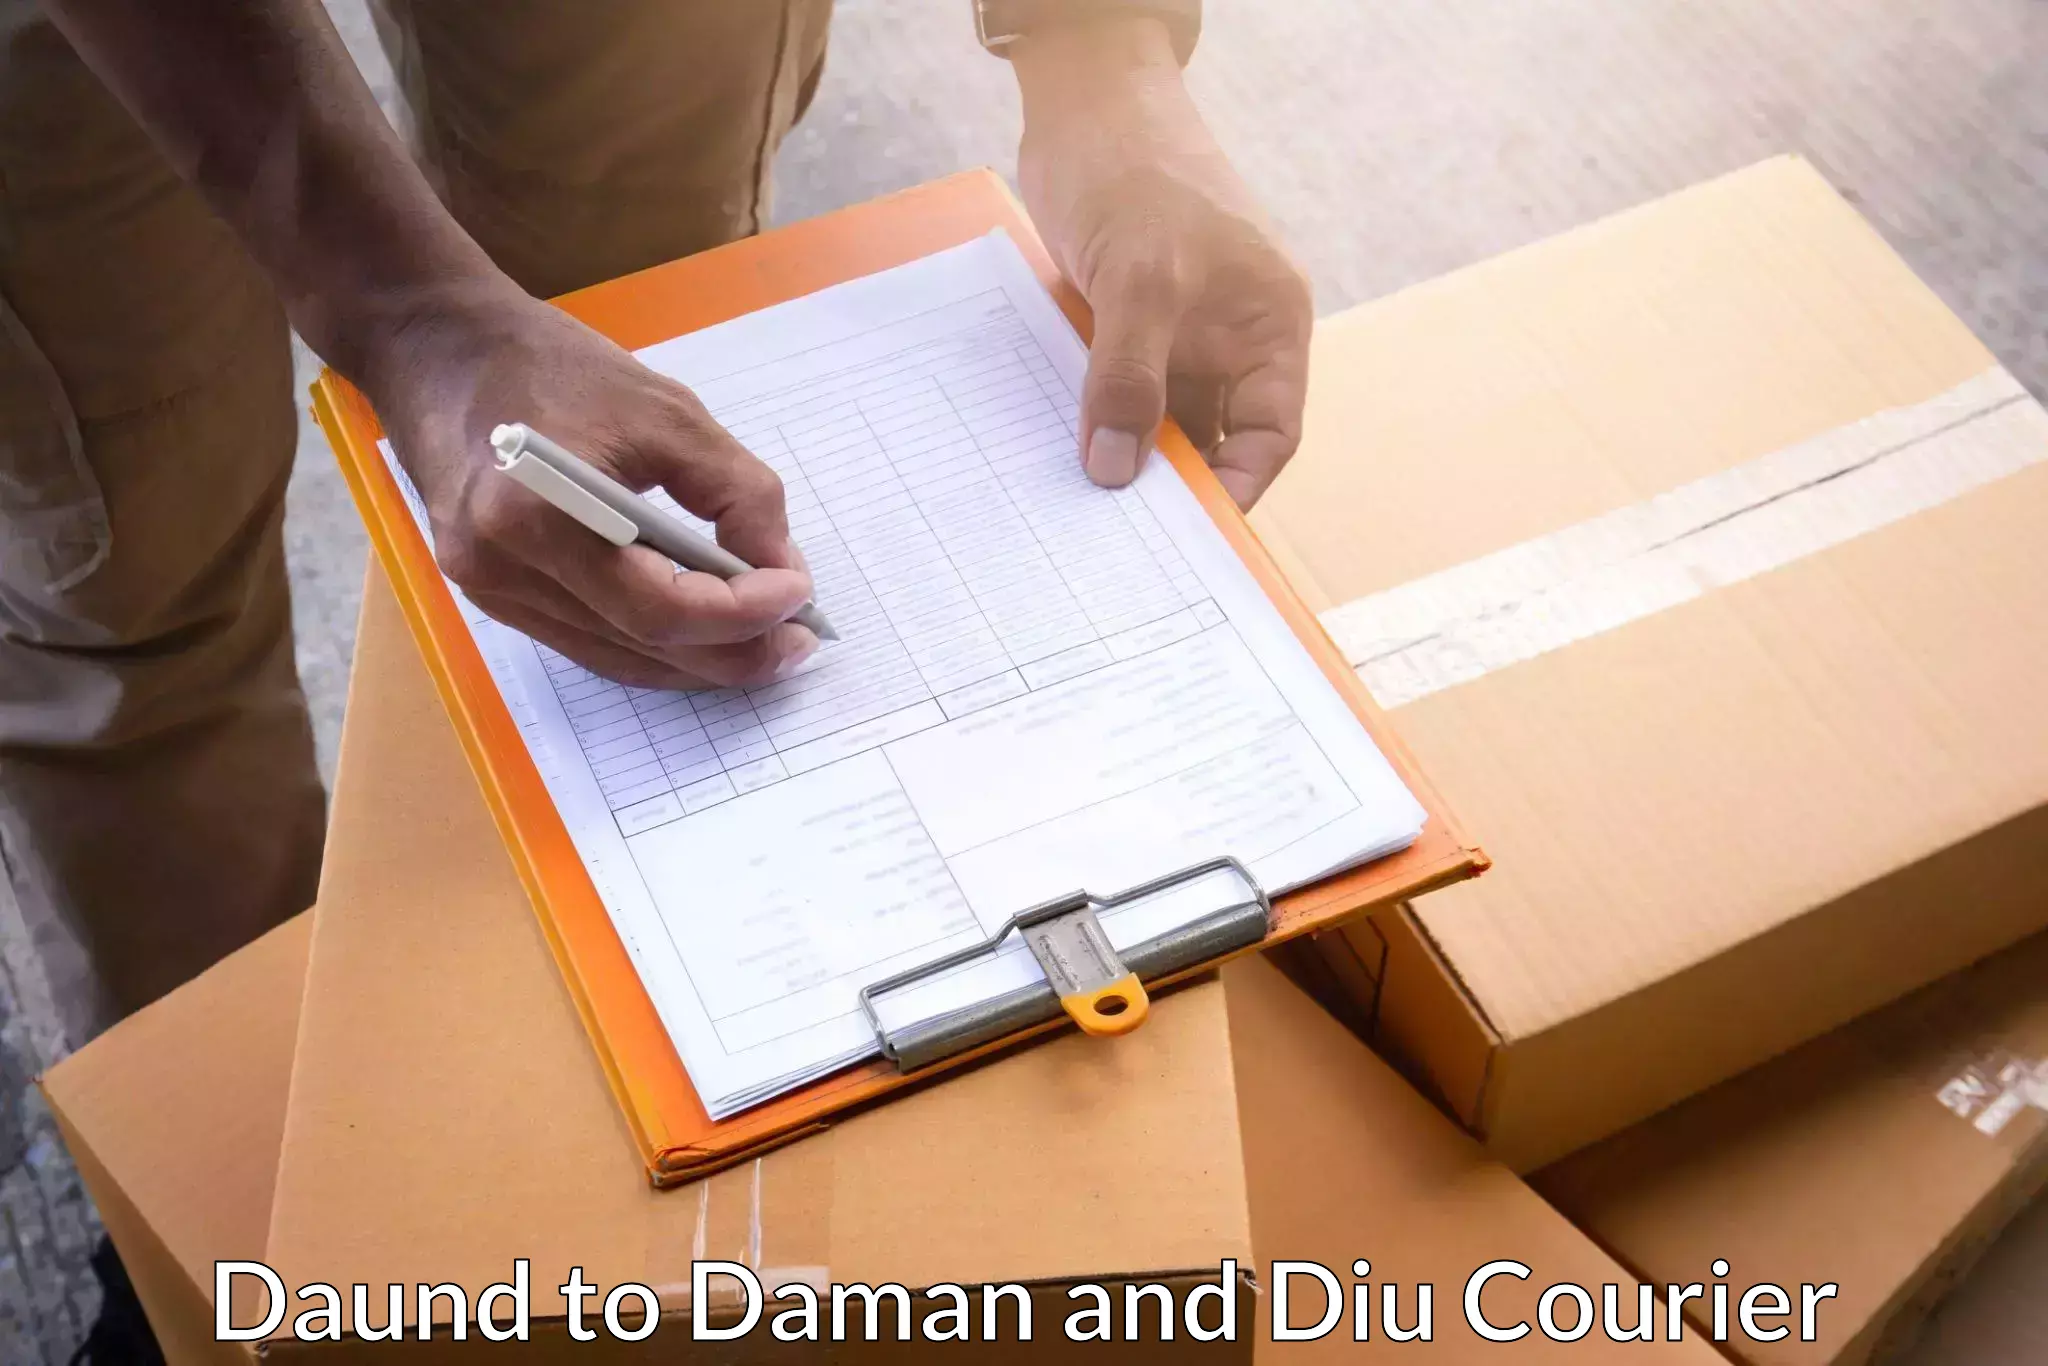 International shipping Daund to Daman